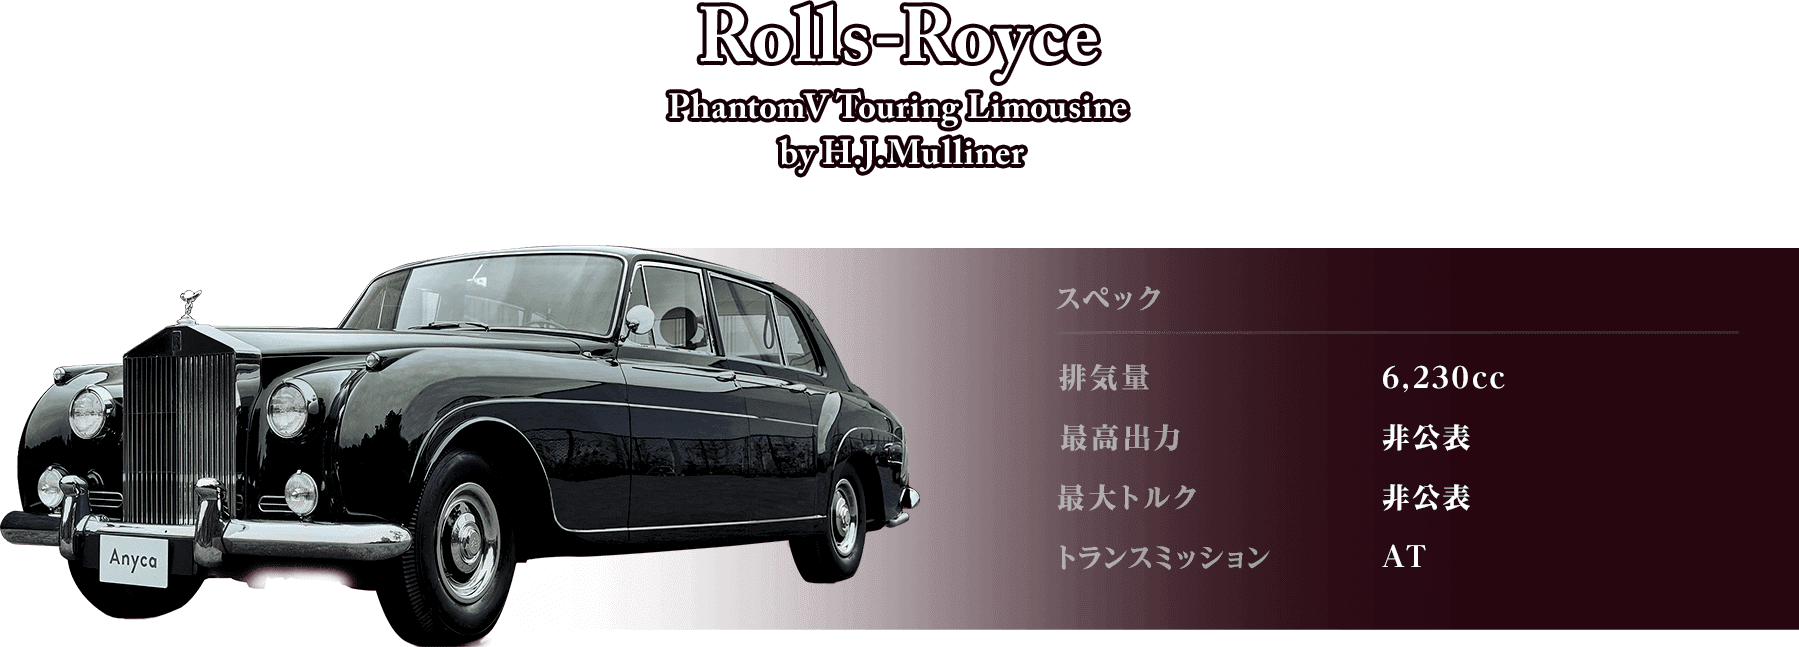 Rolls-Royce PhantomV Touring Limousine  by H.J.Mulliner